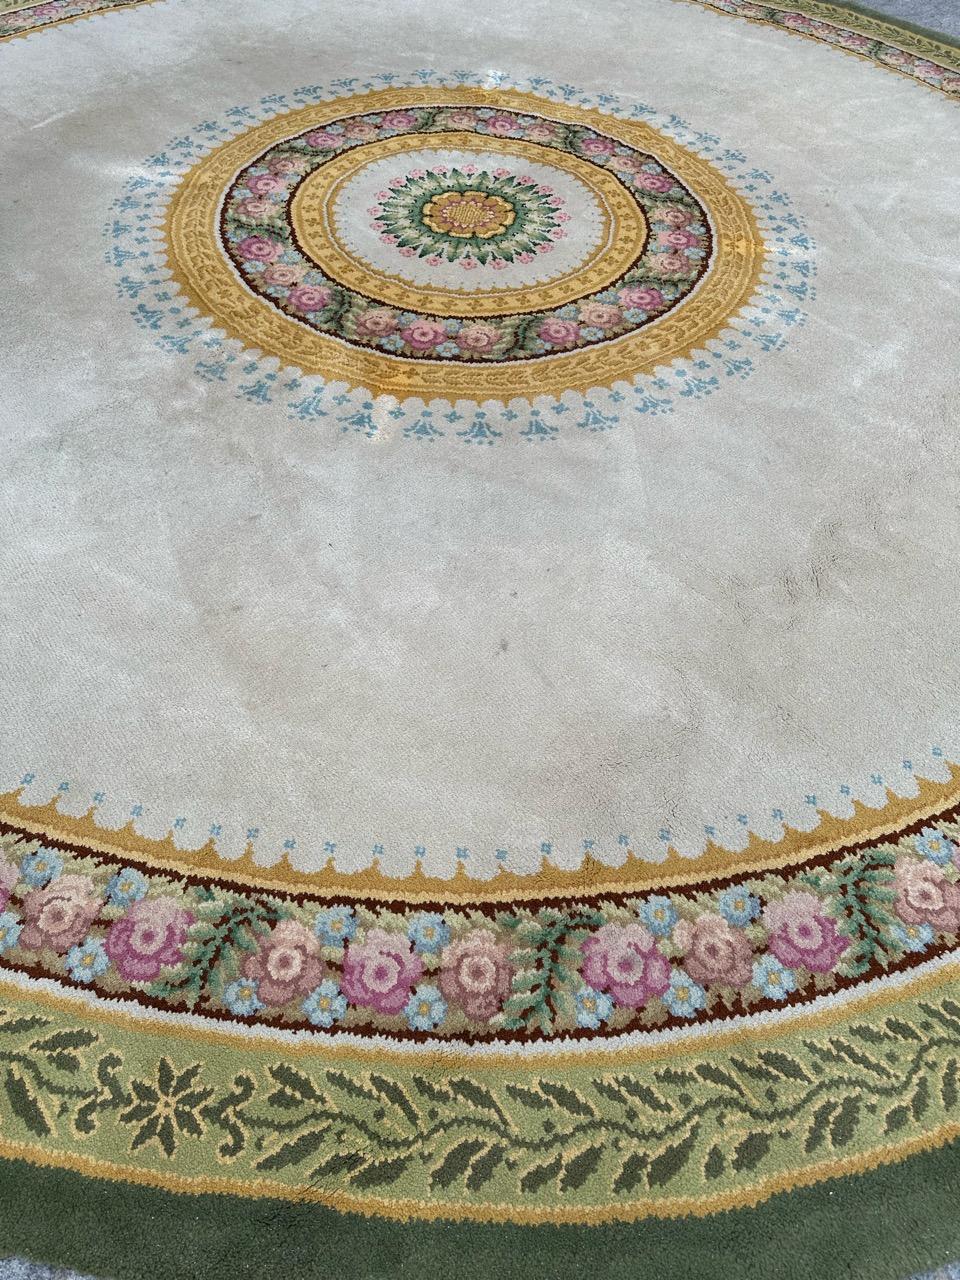 Wir präsentieren einen exquisiten französischen Aubusson-Teppich im Savonnerie-Design, der sowohl außergewöhnlich schön als auch großzügig bemessen ist. Der mit einem hübschen Blumenmuster und einer atemberaubenden Farbpalette geschmückte Teppich